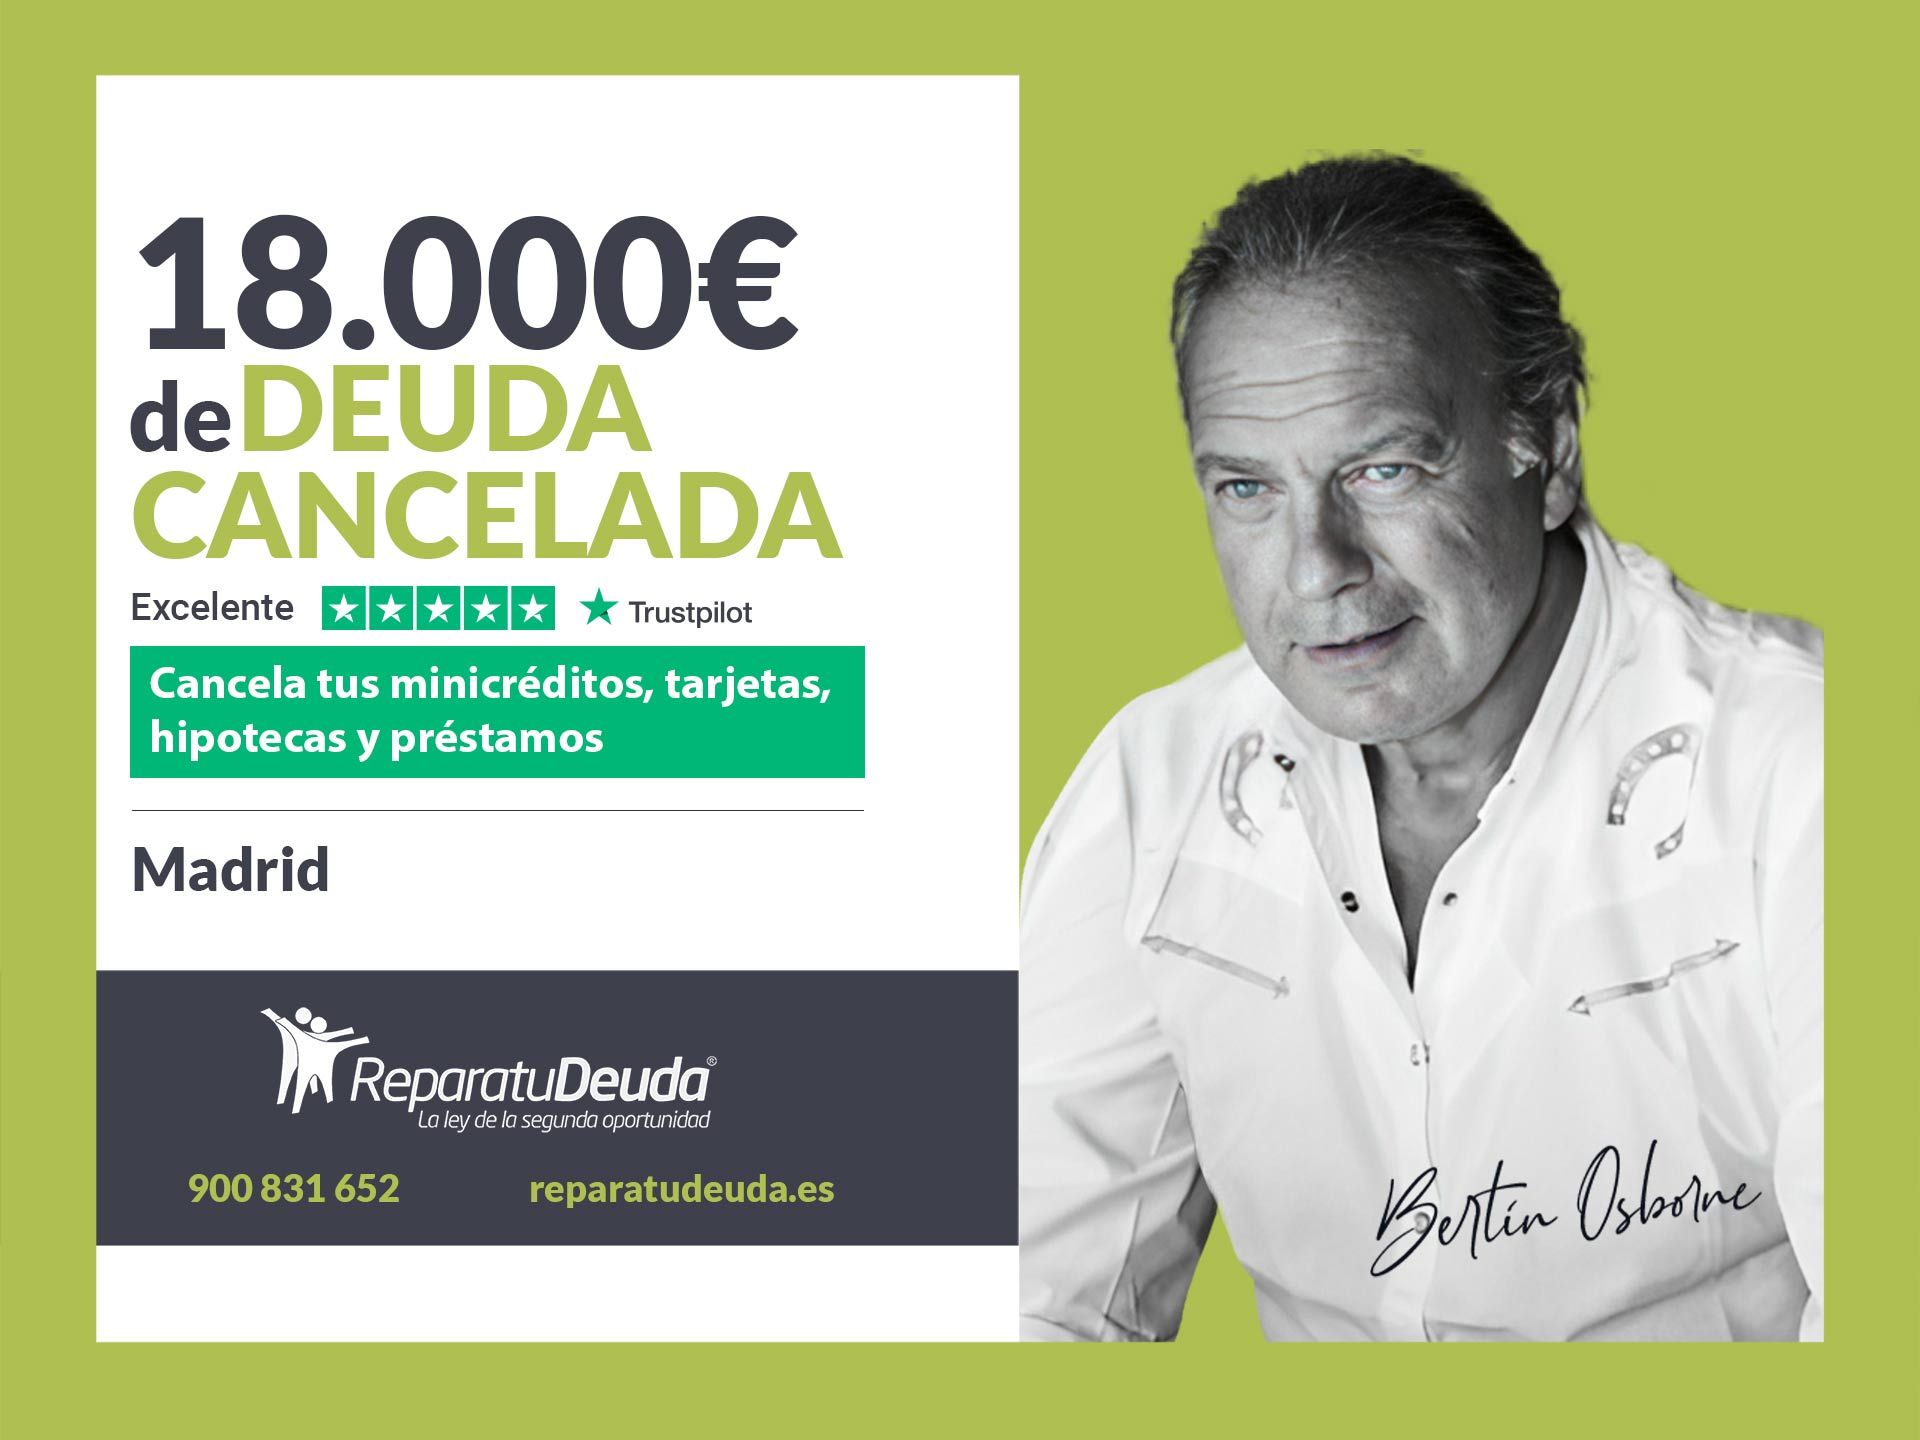 Repara tu Deuda Abogados cancela 18.000? en Madrid con la Ley de Segunda Oportunidad